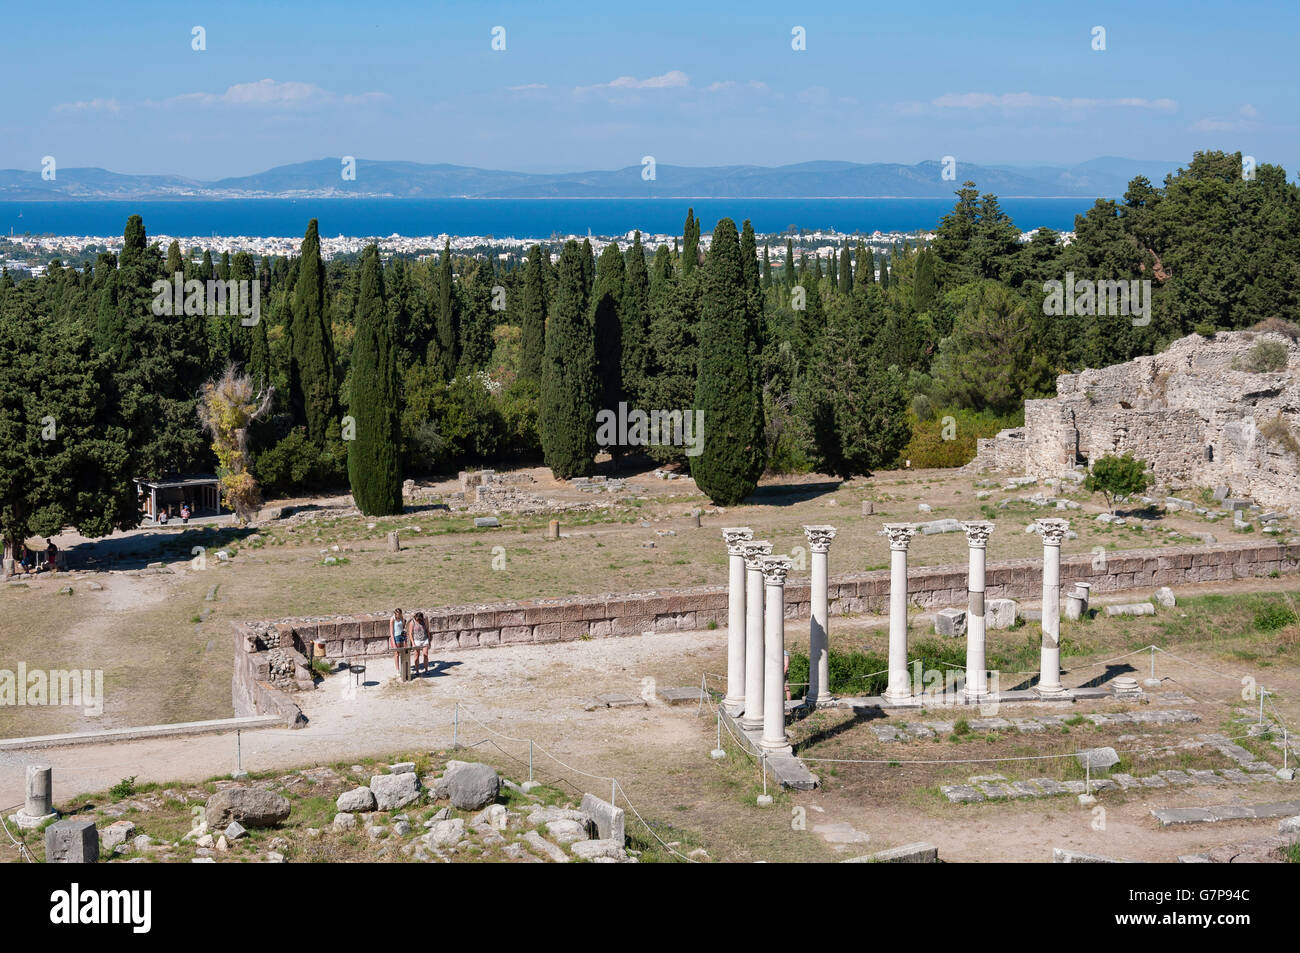 Vue depuis la terrasse supérieure de l'Asklepieion, Platani, Kos (Cos), du Dodécanèse, Grèce, région sud de la Mer Egée Banque D'Images